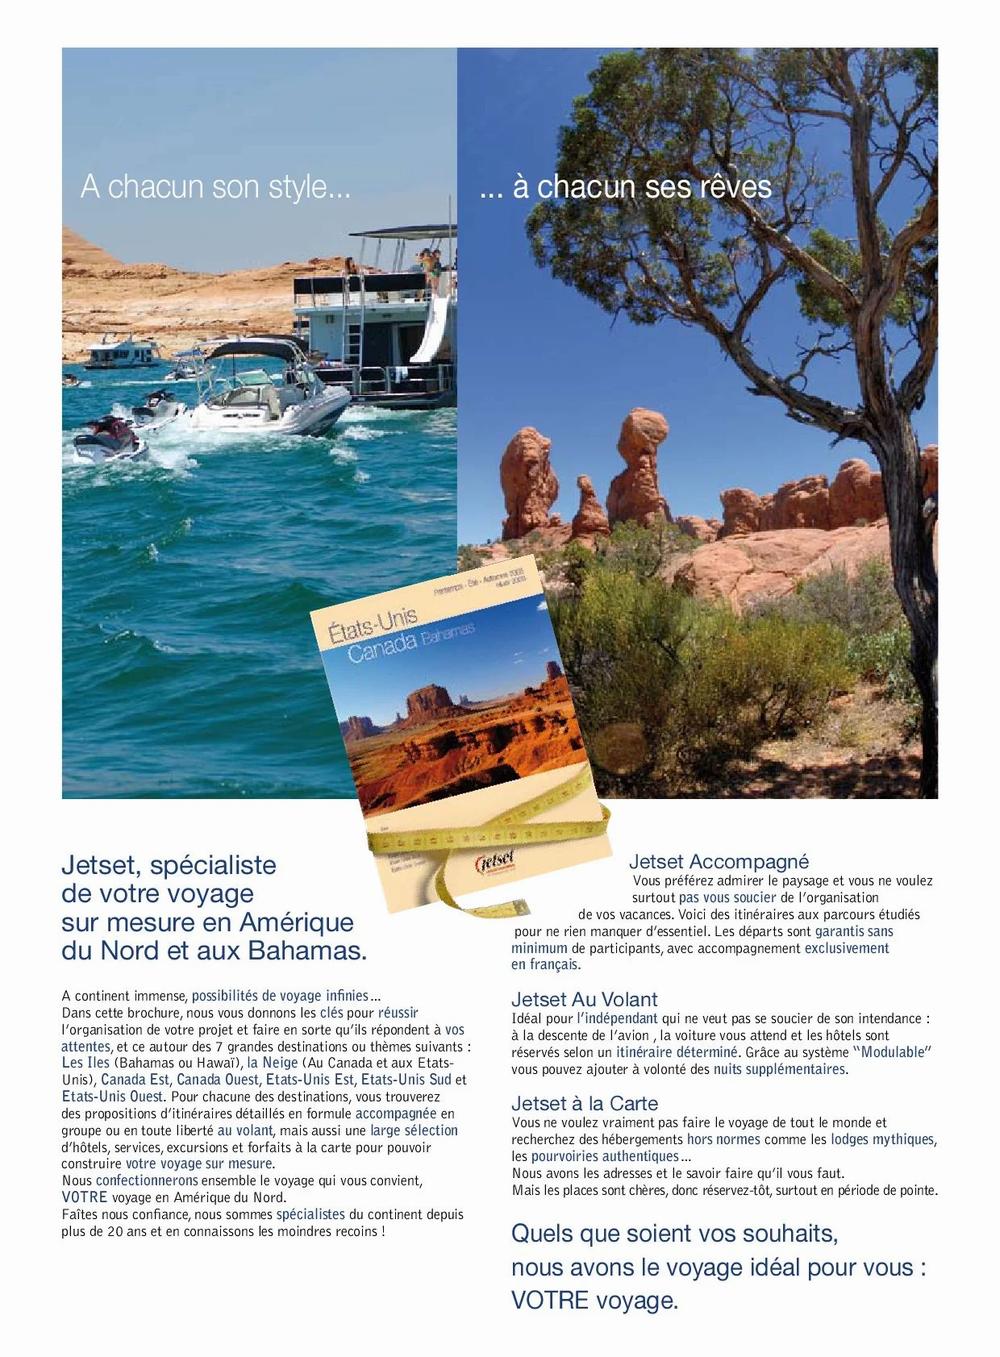 Limage montre une brochure de voyage avec des informations sur les voyages sur mesure en Amérique du Nord et aux Bahamas.